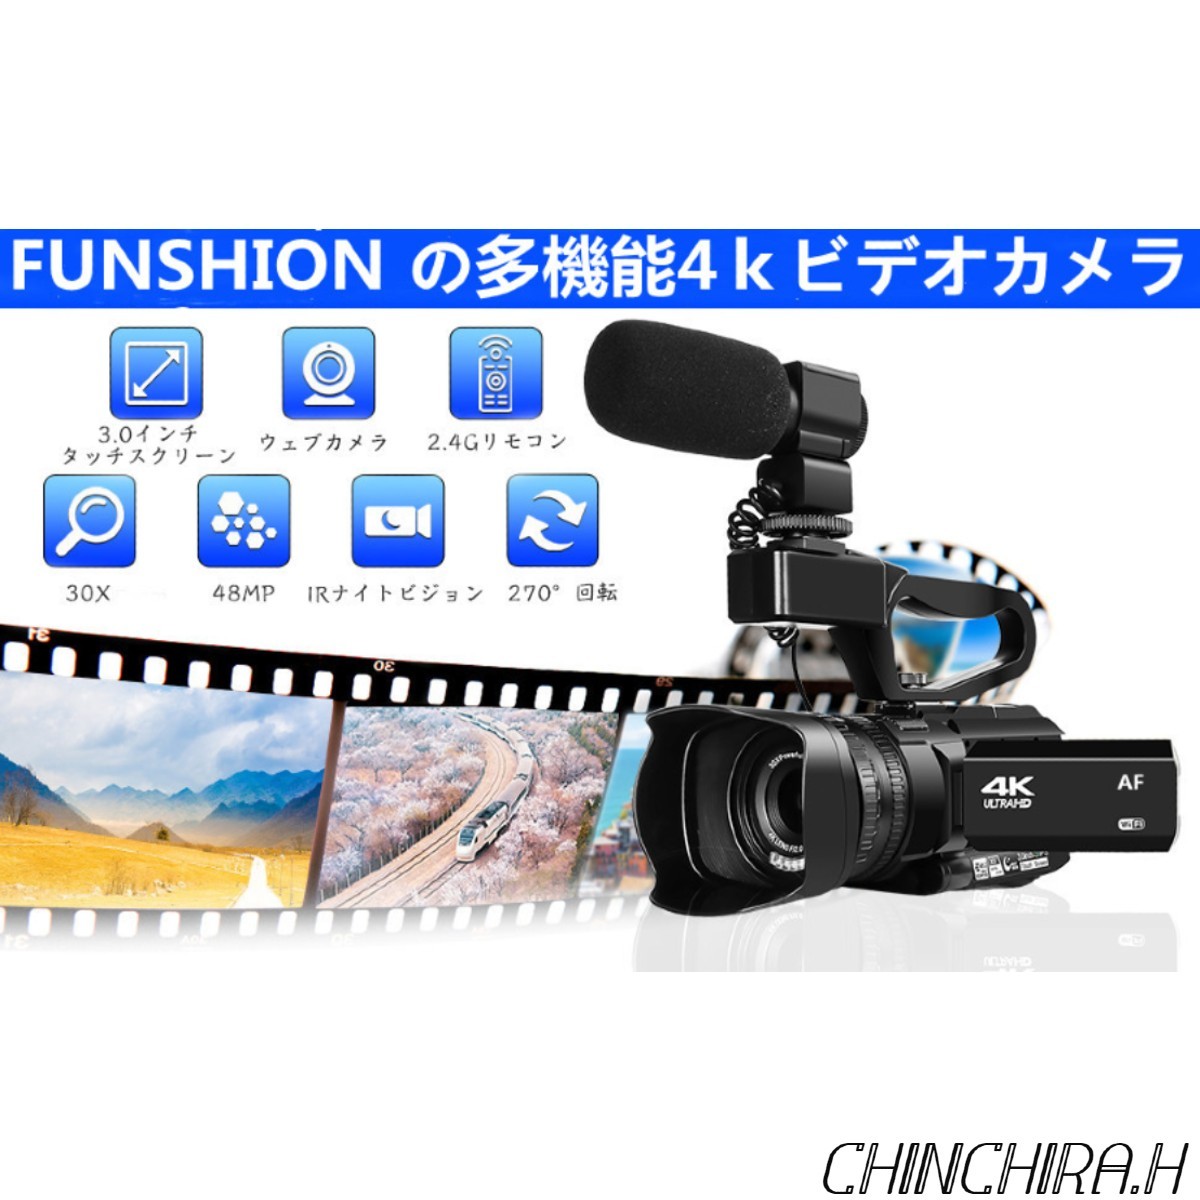 売れ筋商品 4K ビデオカメラ カメラウェブカメラ 4500mAh 30倍デジタルズームHDMI出力 AFオートフォーカス WIFI機能 48MP  60FPS YouTube - ビデオカメラ - reachahand.org